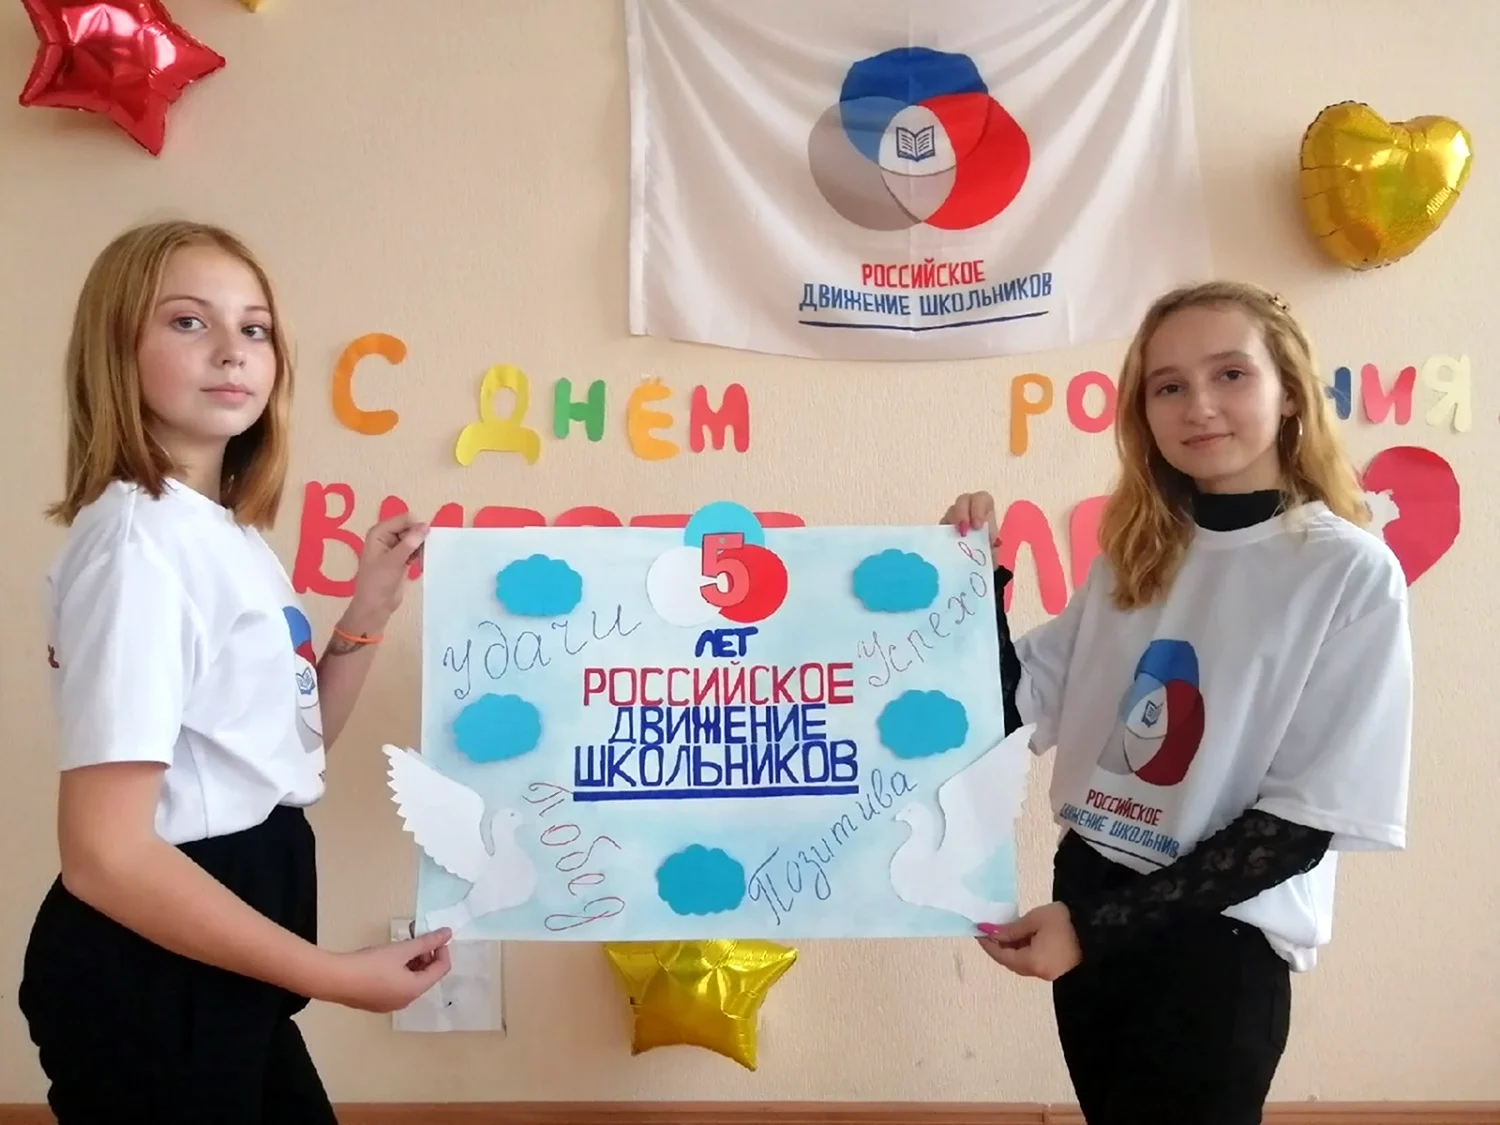 Российское движение школьников дом